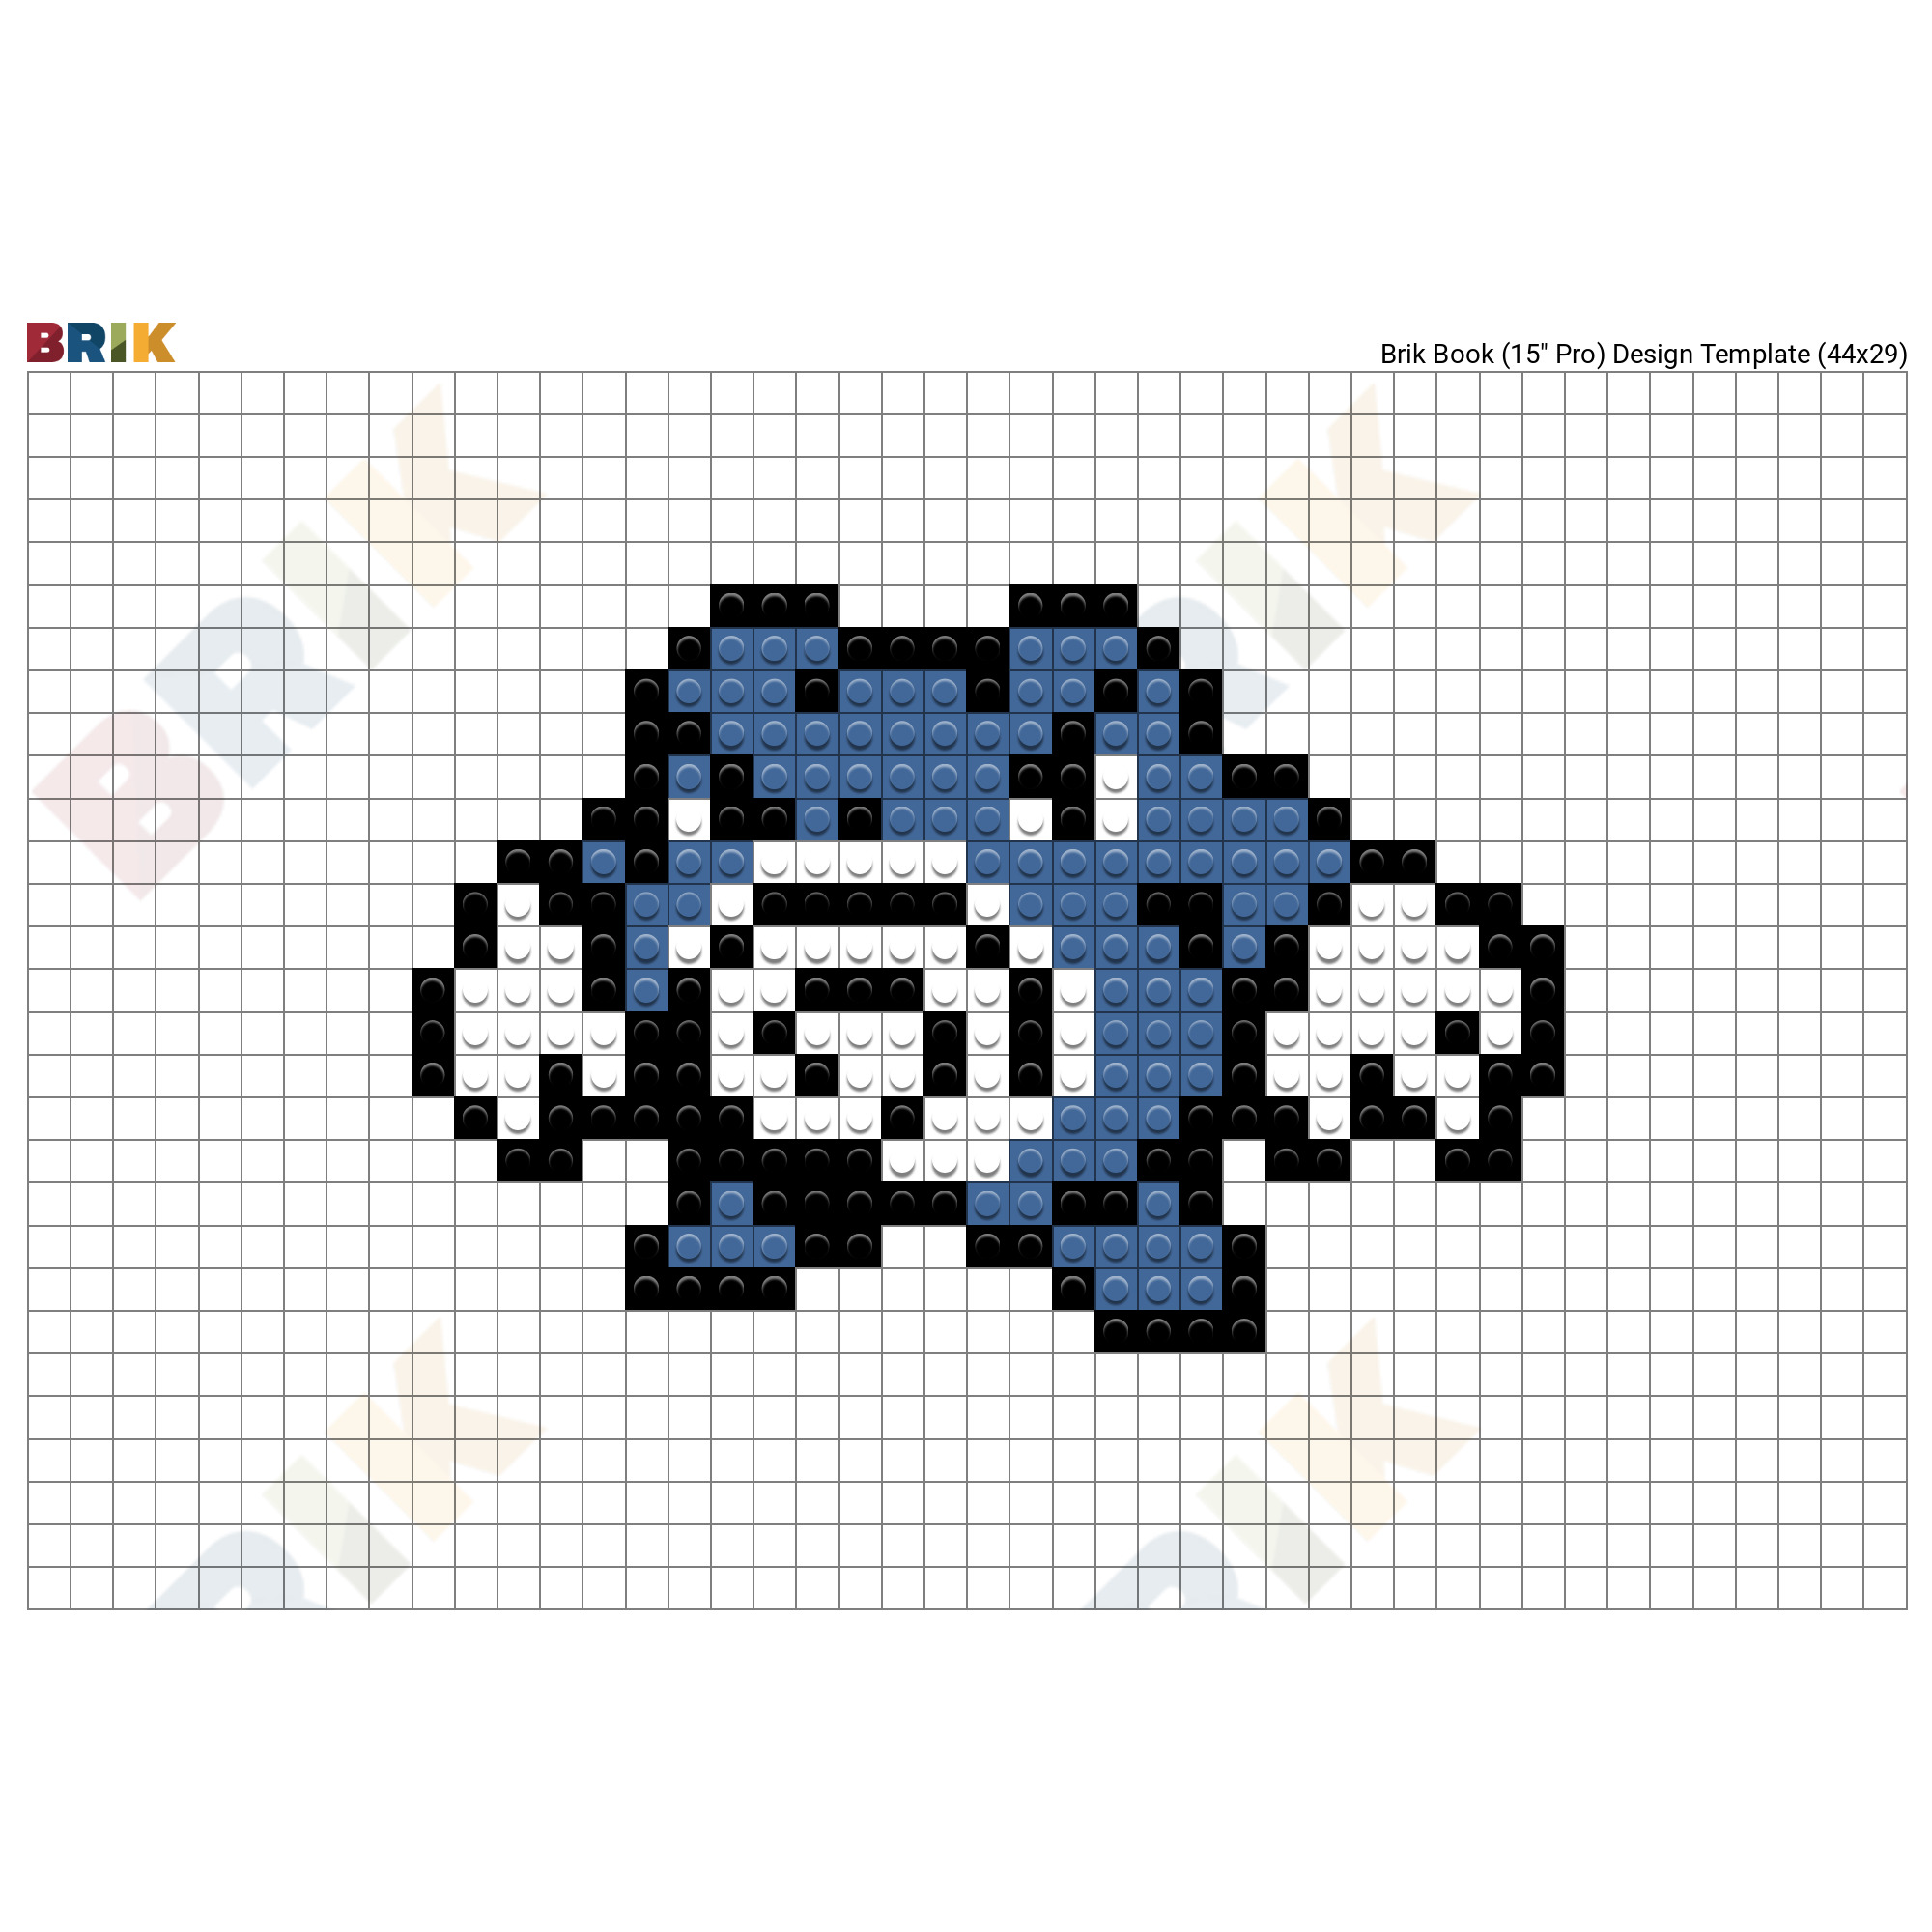 The new Pokémon Gimmighoul - 32x32 px : r/PixelArt